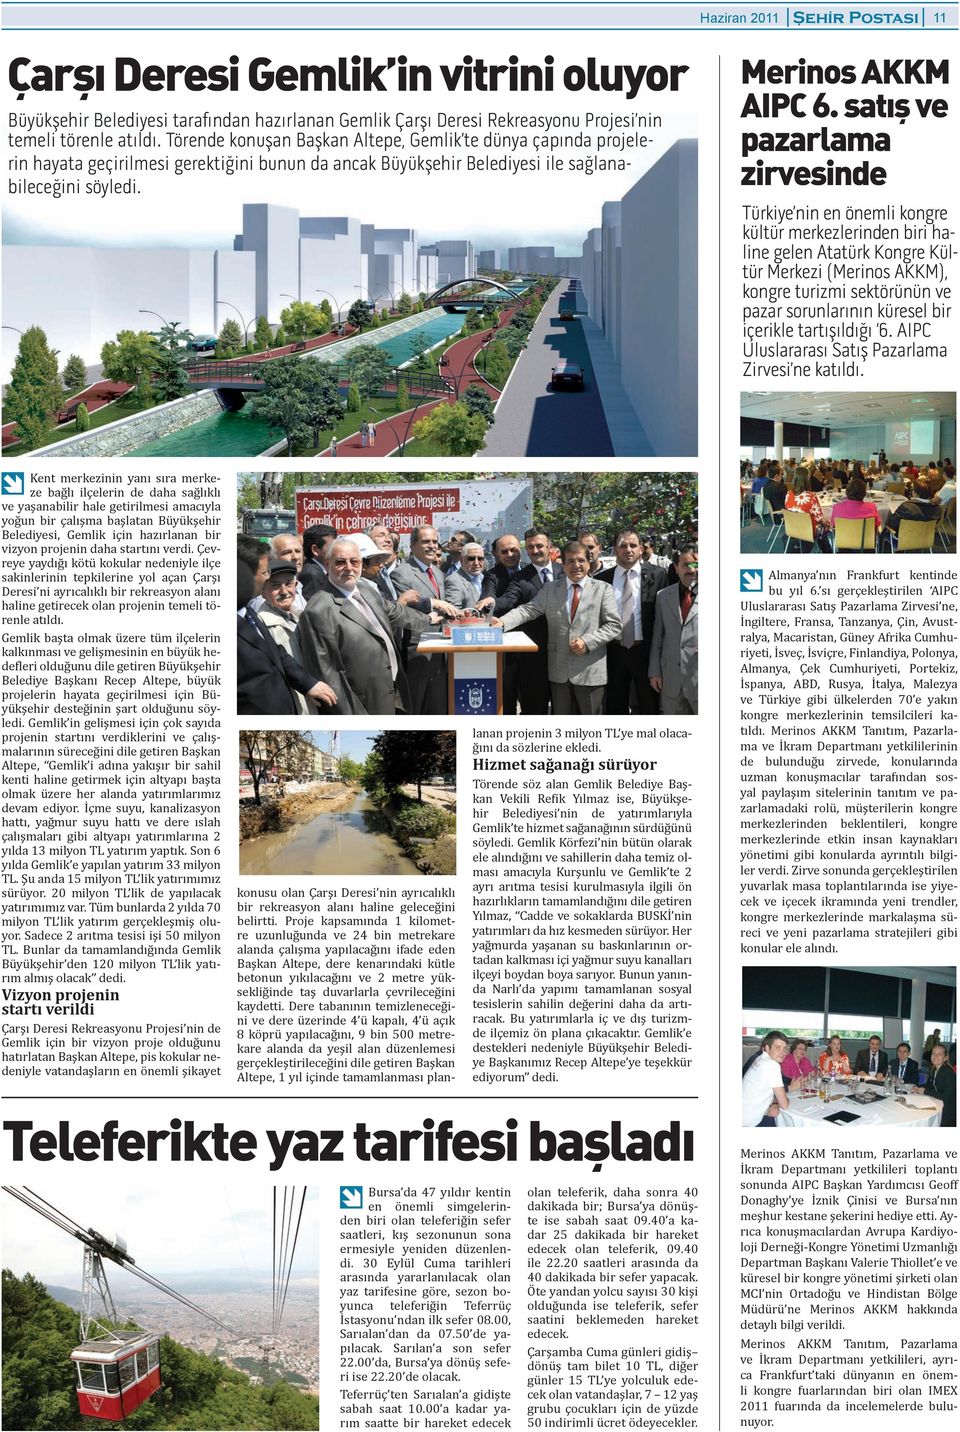 önemli kongre kültür merkezlerinden biri haline gelen Atatürk Kongre Kültür Merkezi (Merinos AKKM), kongre turizmi sektörünün ve pazar sorunlarının küresel bir ierikle tartışıldığı 6 AIPC